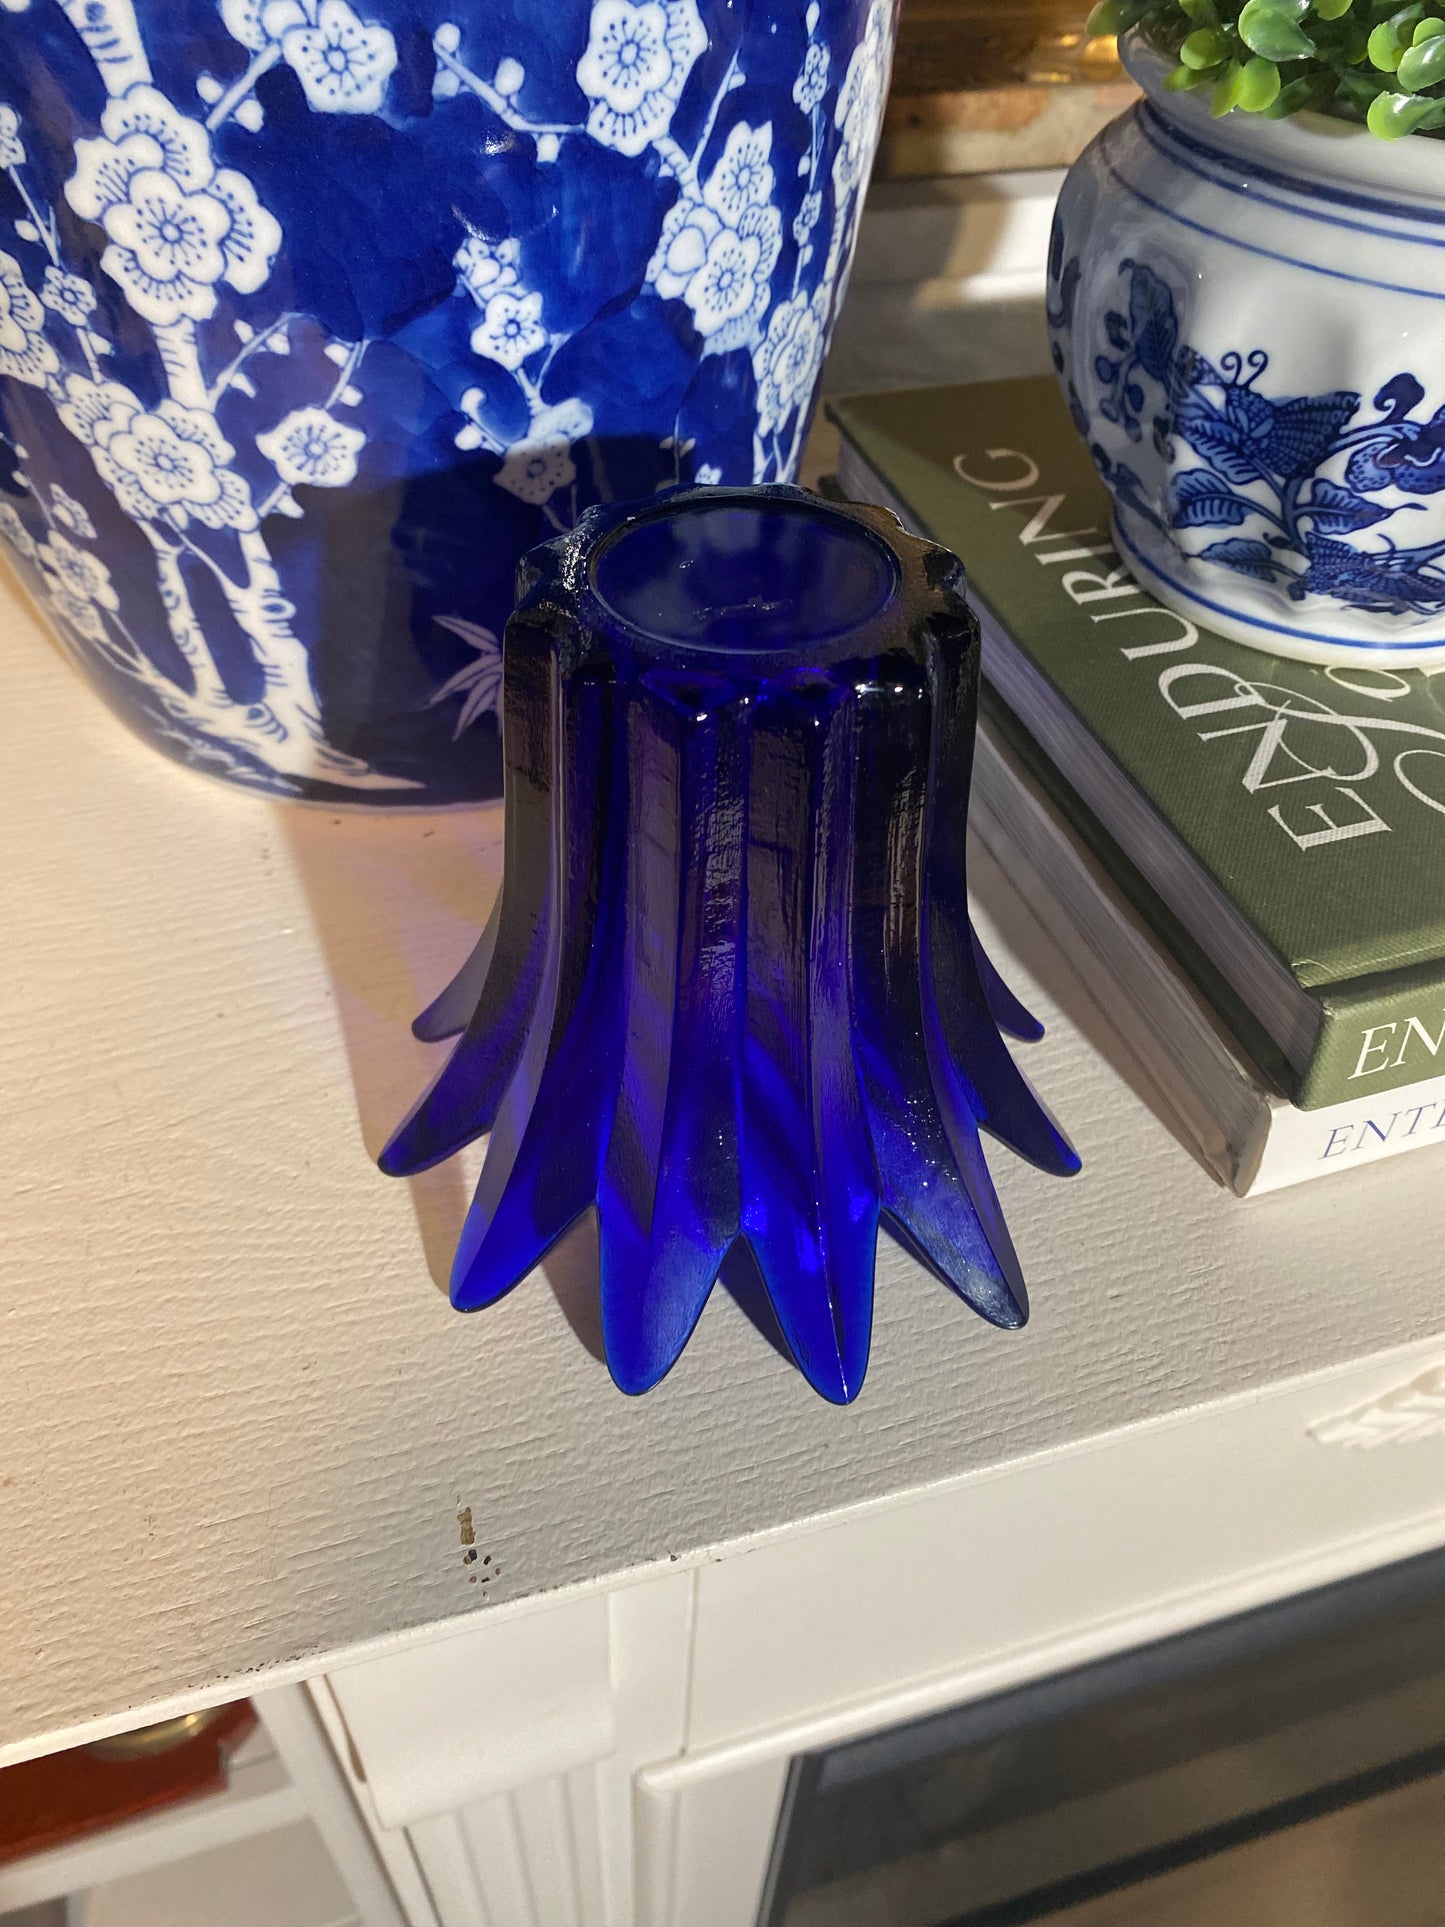 Handmade Cobalt Blue Glass Votive Candle Holder Vase by Studio Nova - Made in Portugal"